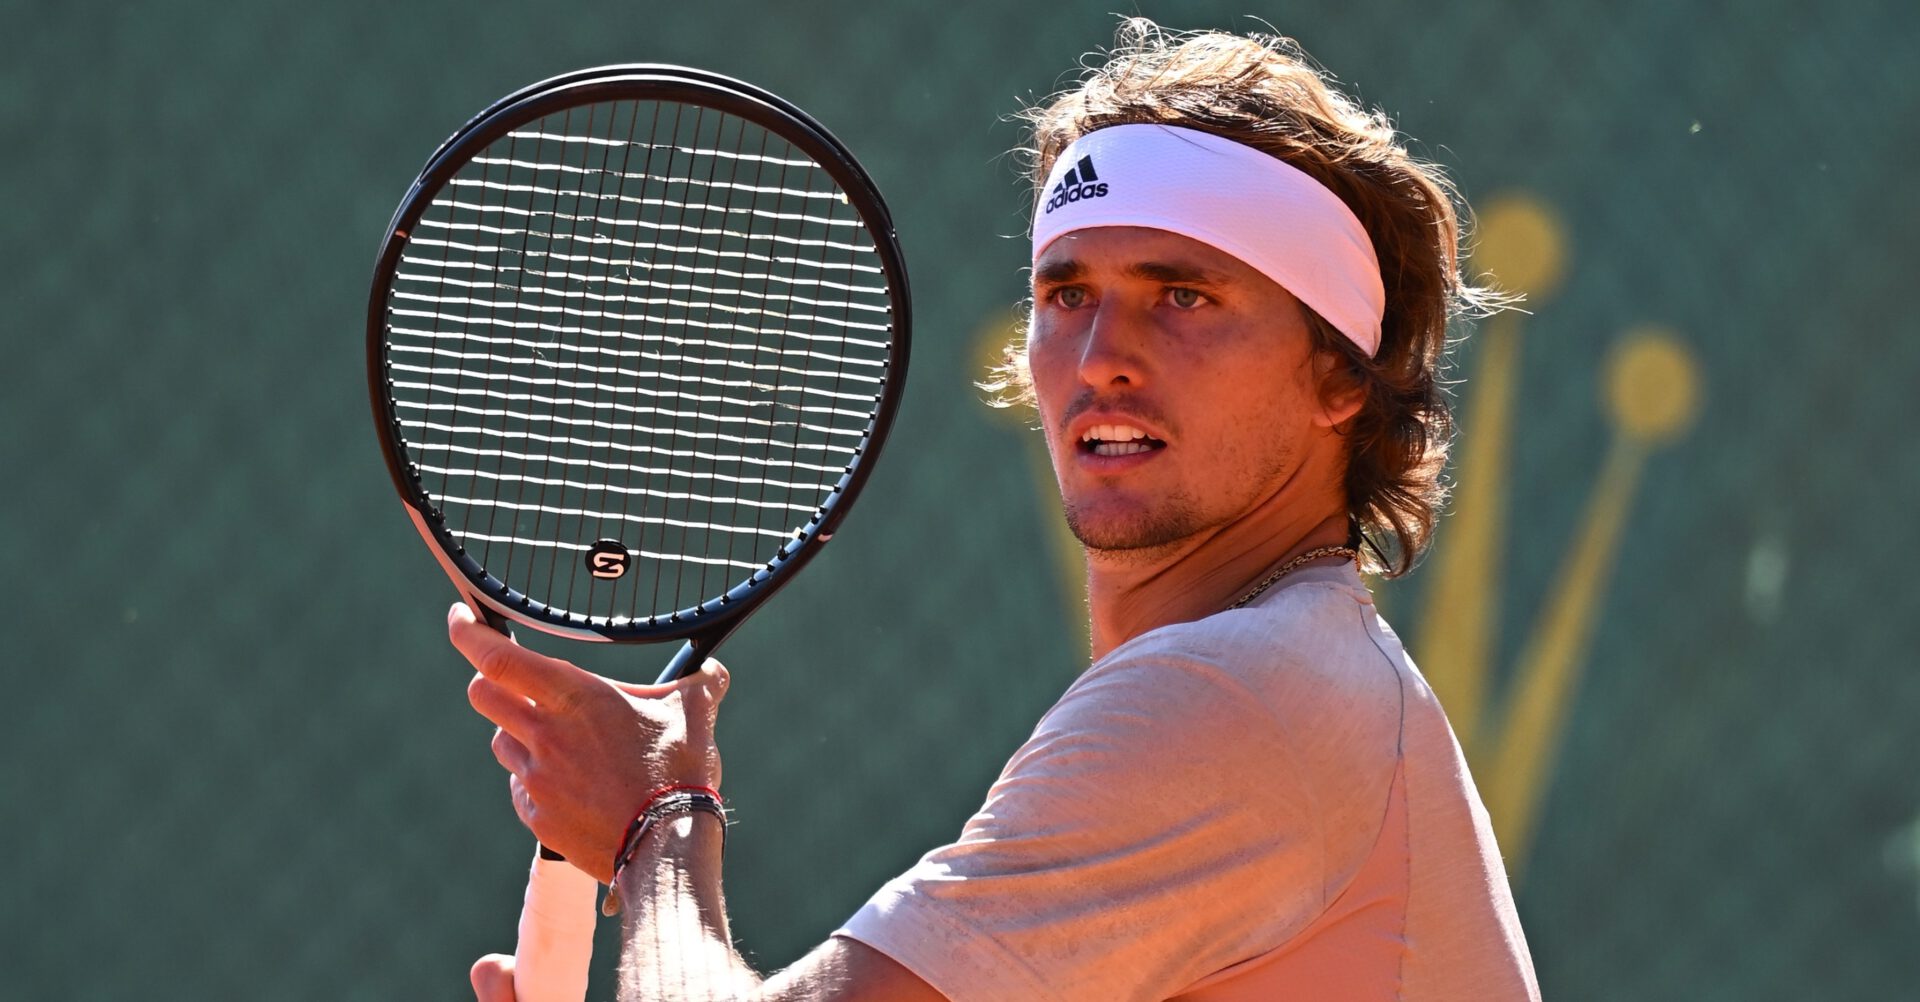 Alexander Zverev „Halle ist nach Wimbledon das größte Rasenturnier der Welt“ - NewsGO